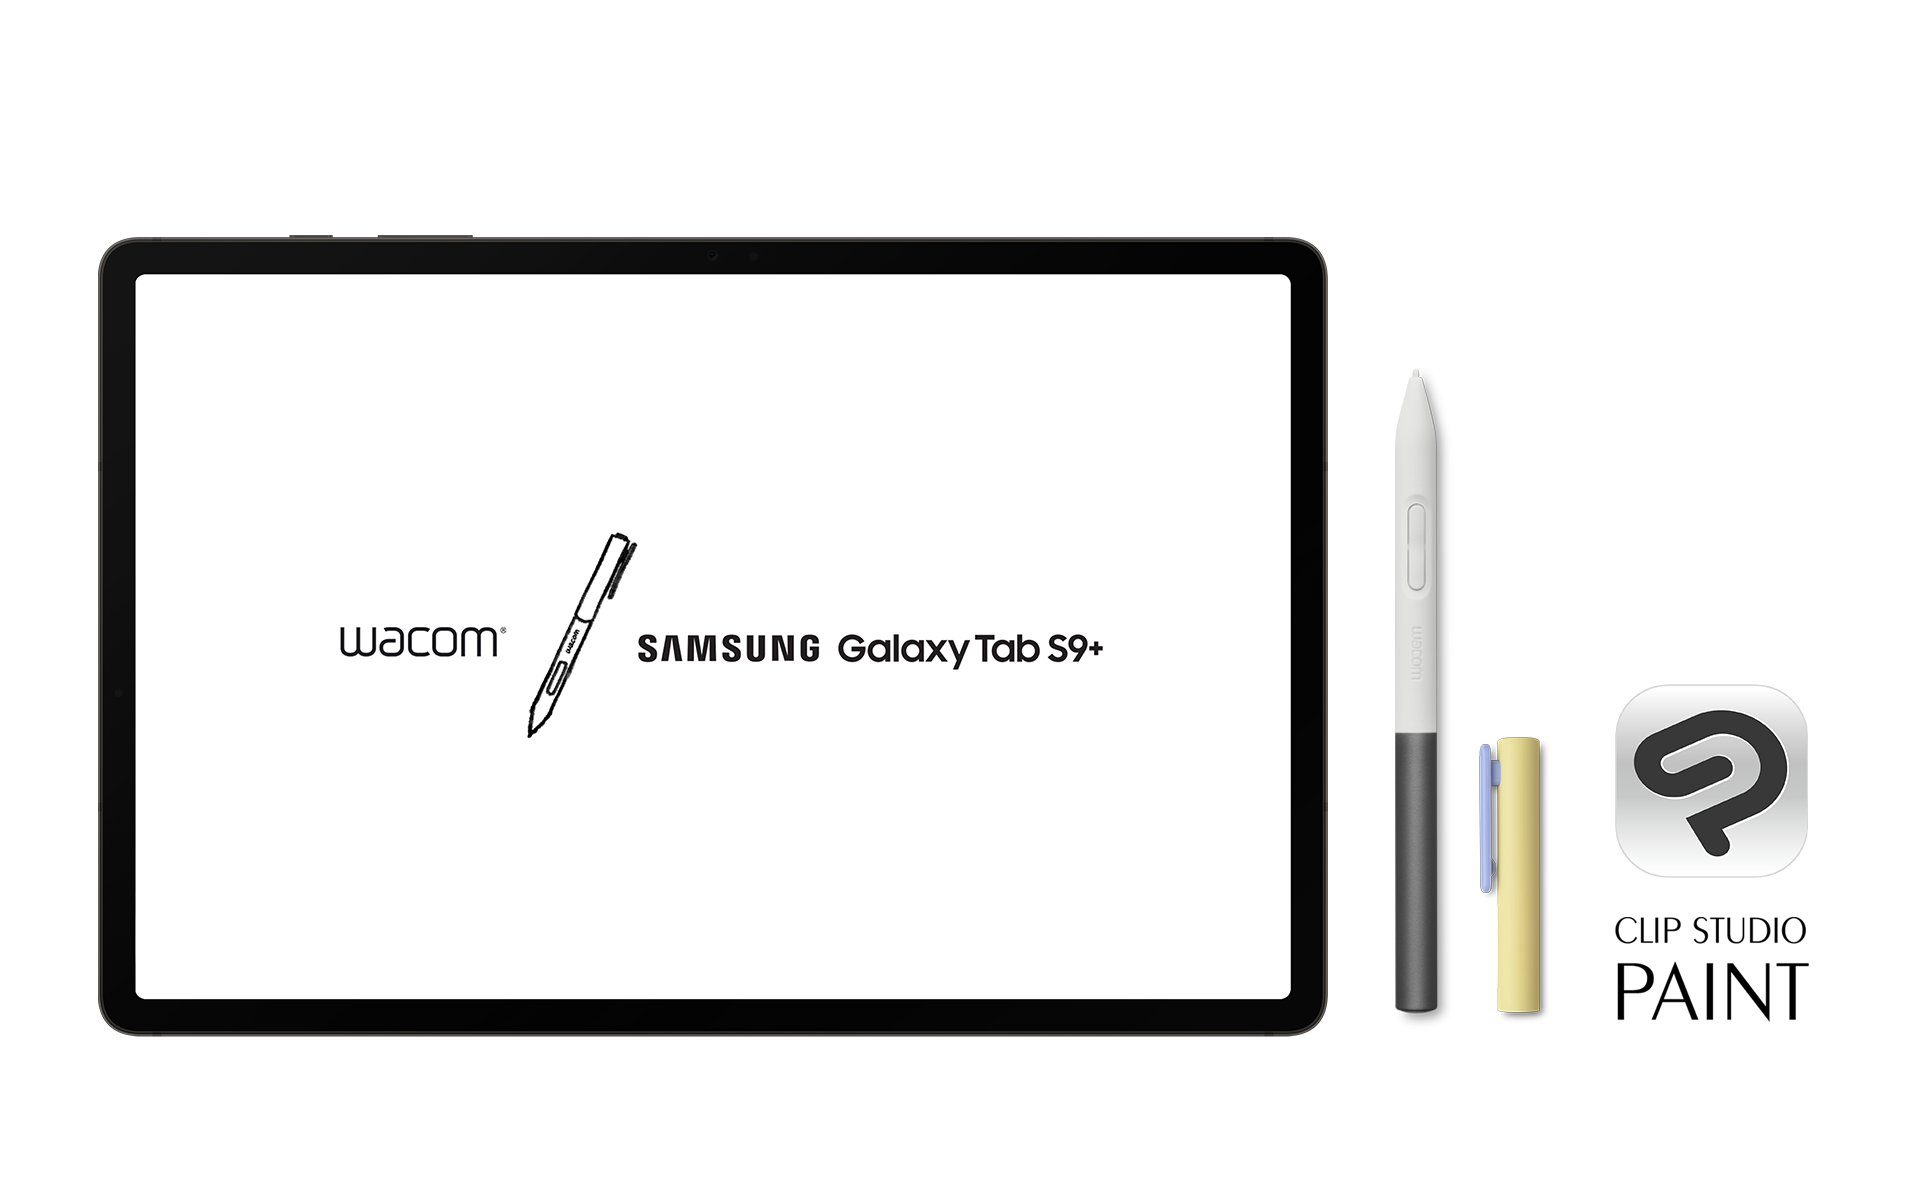 「CLIP STUDIO PAINT」と「Galaxy Tab S9+」、ワコムペンがセットになった学生限定モデル「Wacom Mobile Creative Edition」が韓国ワコムから発売　ワコムのデジタルペン技術搭載のタブレットとシンプルな操作画面で最適な学習環境を提供